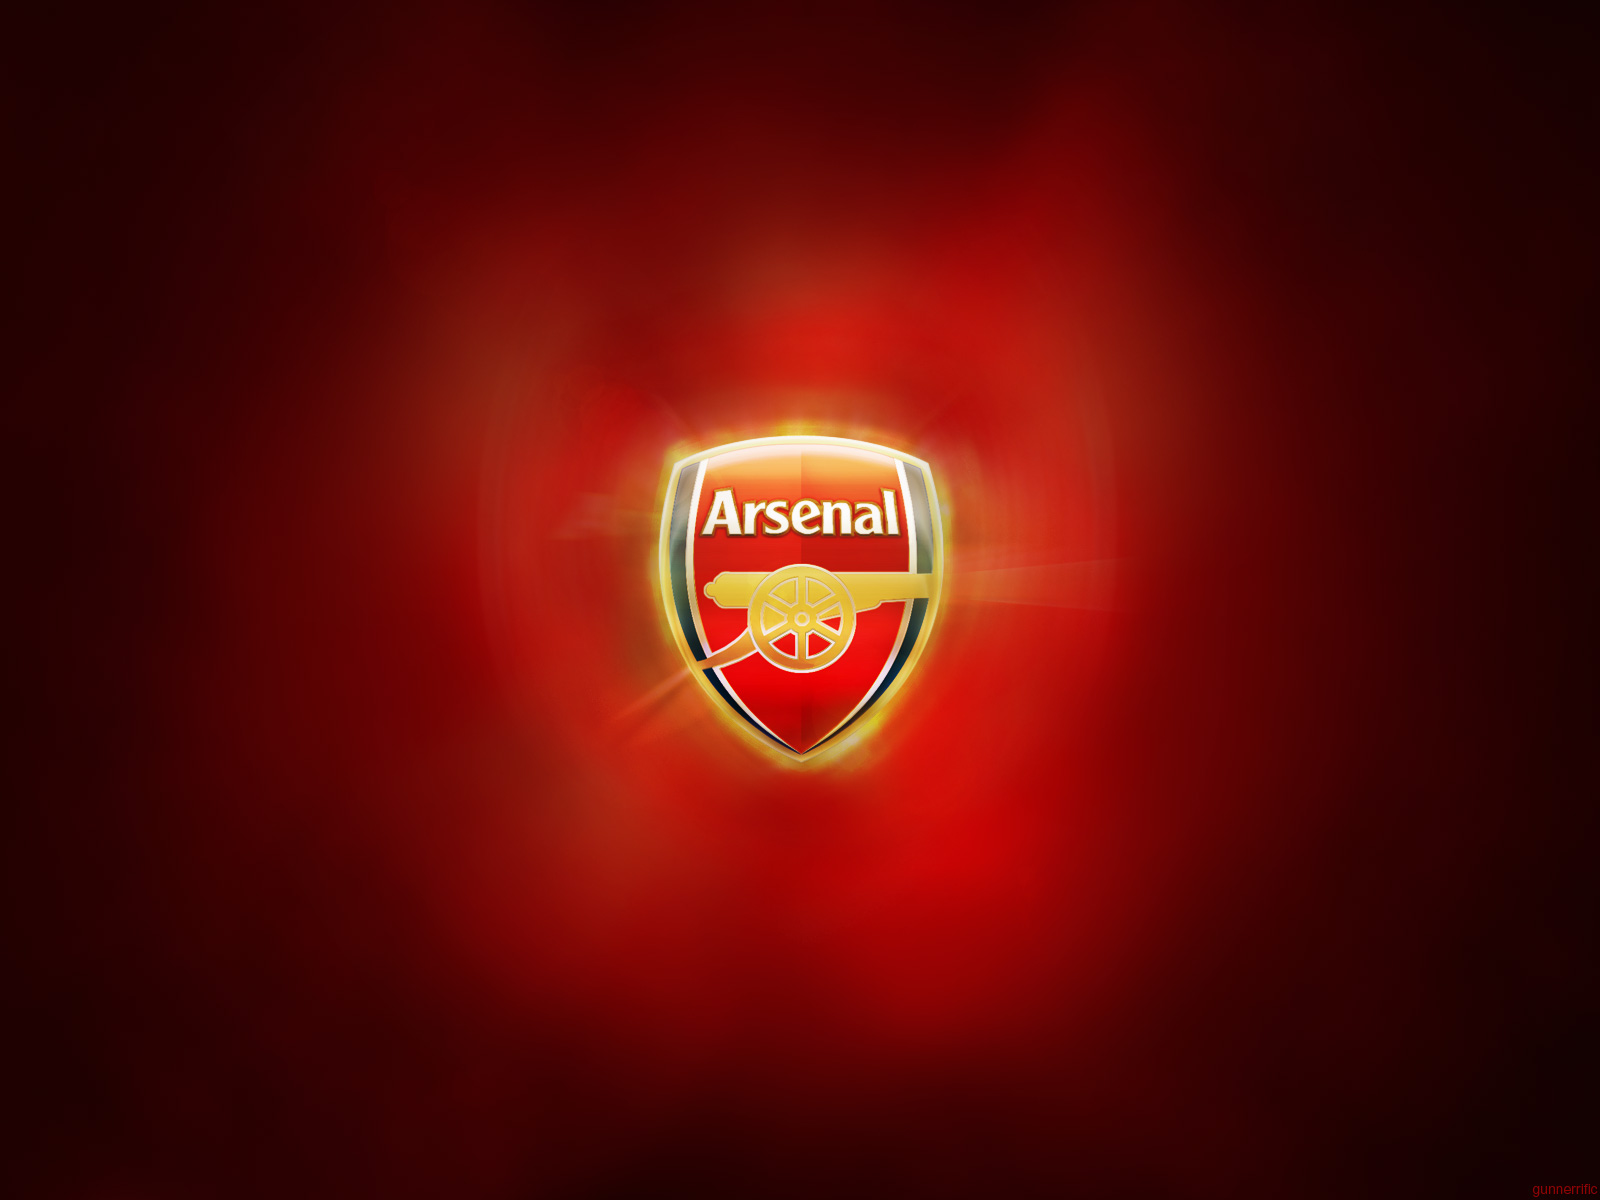 Fond d'écran Arsenal FC gratuit fonds écran Arsenal FC, logo, foot, sport, club de foot